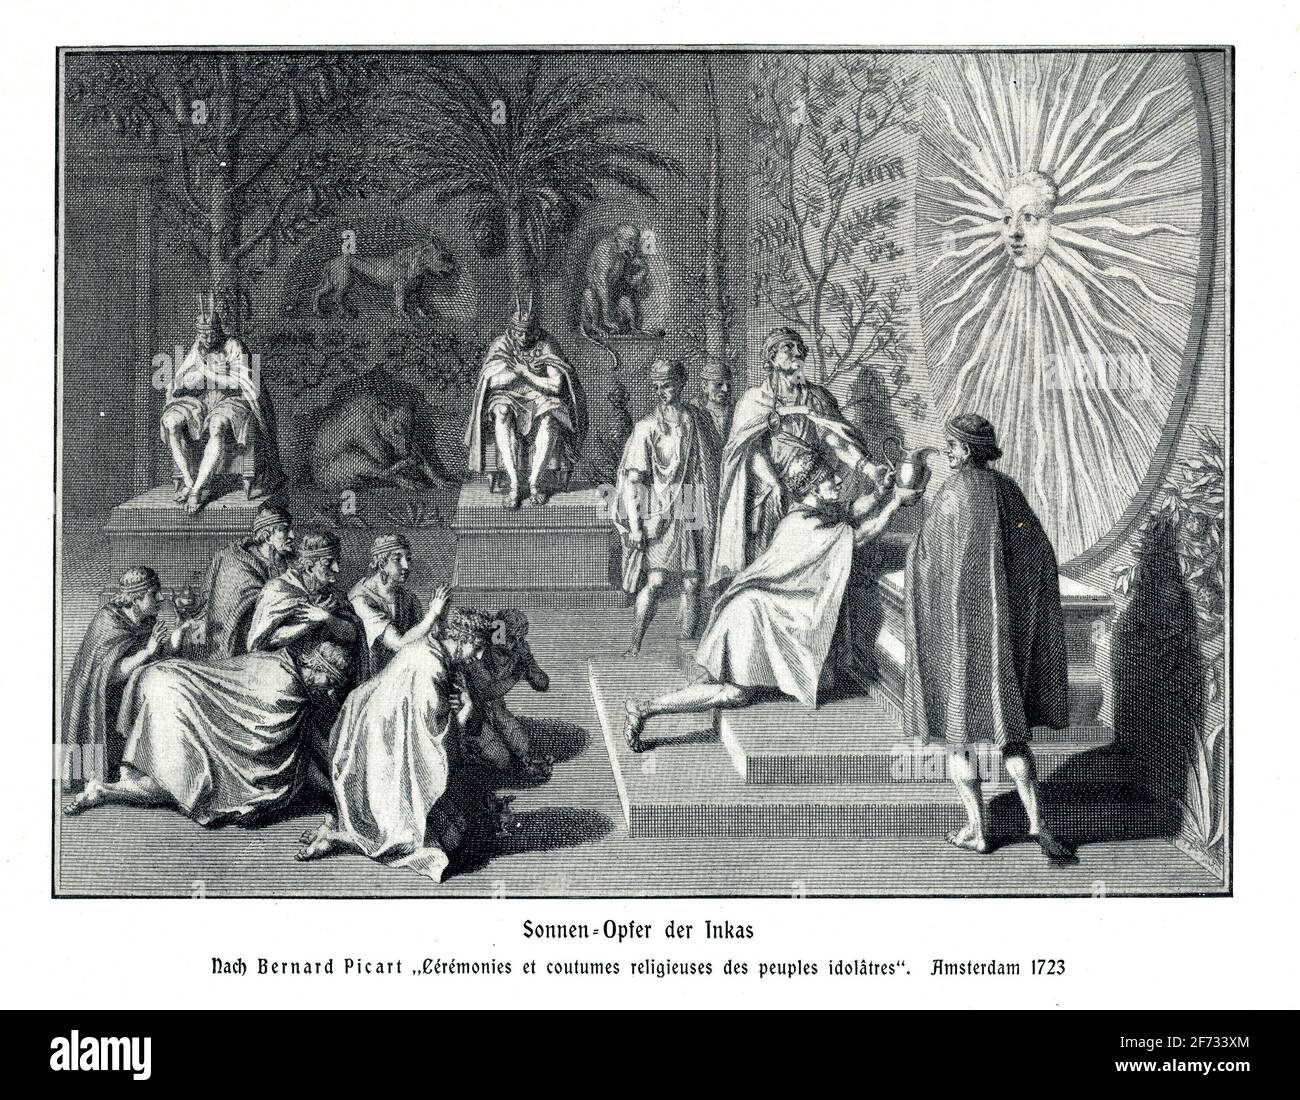 Sonenopfer der Inkas, après Bernrd Bicart maemerie et coutumes religieuses des clochers idolatres de 1723 Banque D'Images